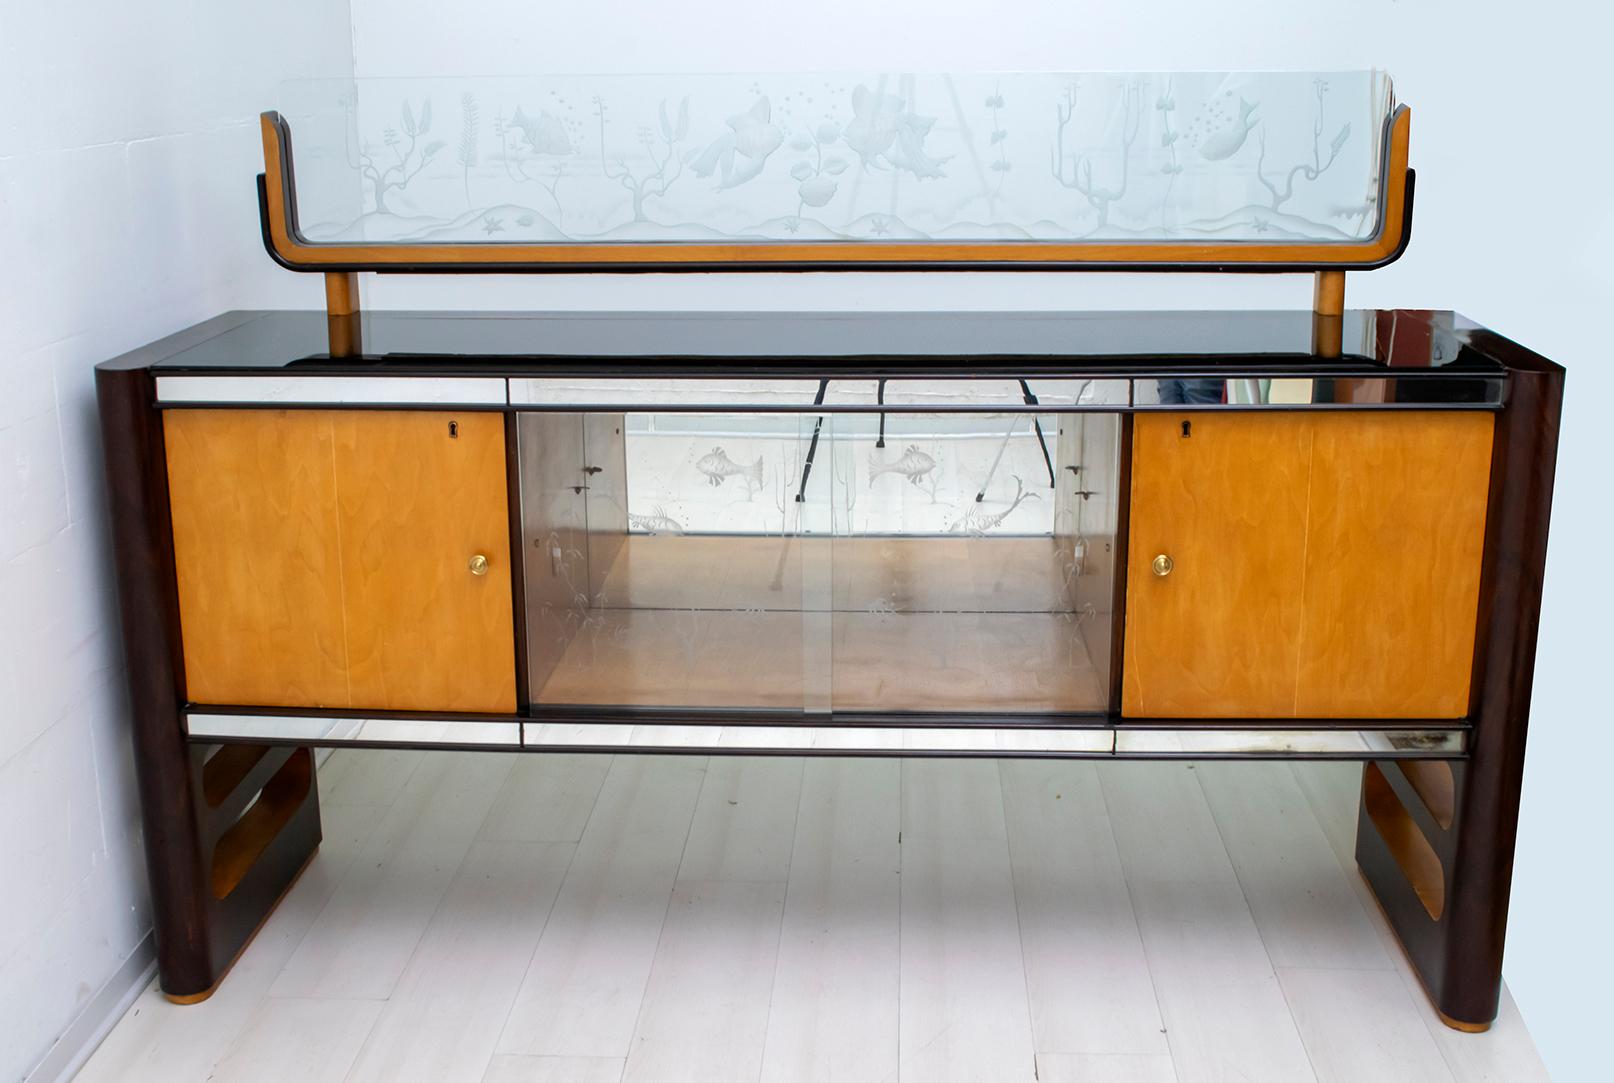 Dieses Bar-Sideboard wurde von Arredamenti Borsani Varedo in den 1950er Jahren in Italien hergestellt. Die Anrichte ist aus Nussbaum und Ahorn, Spiegeln und Glas. Die Besonderheit ist das darüber liegende Glas, das einen Meeresboden nachbildet, das